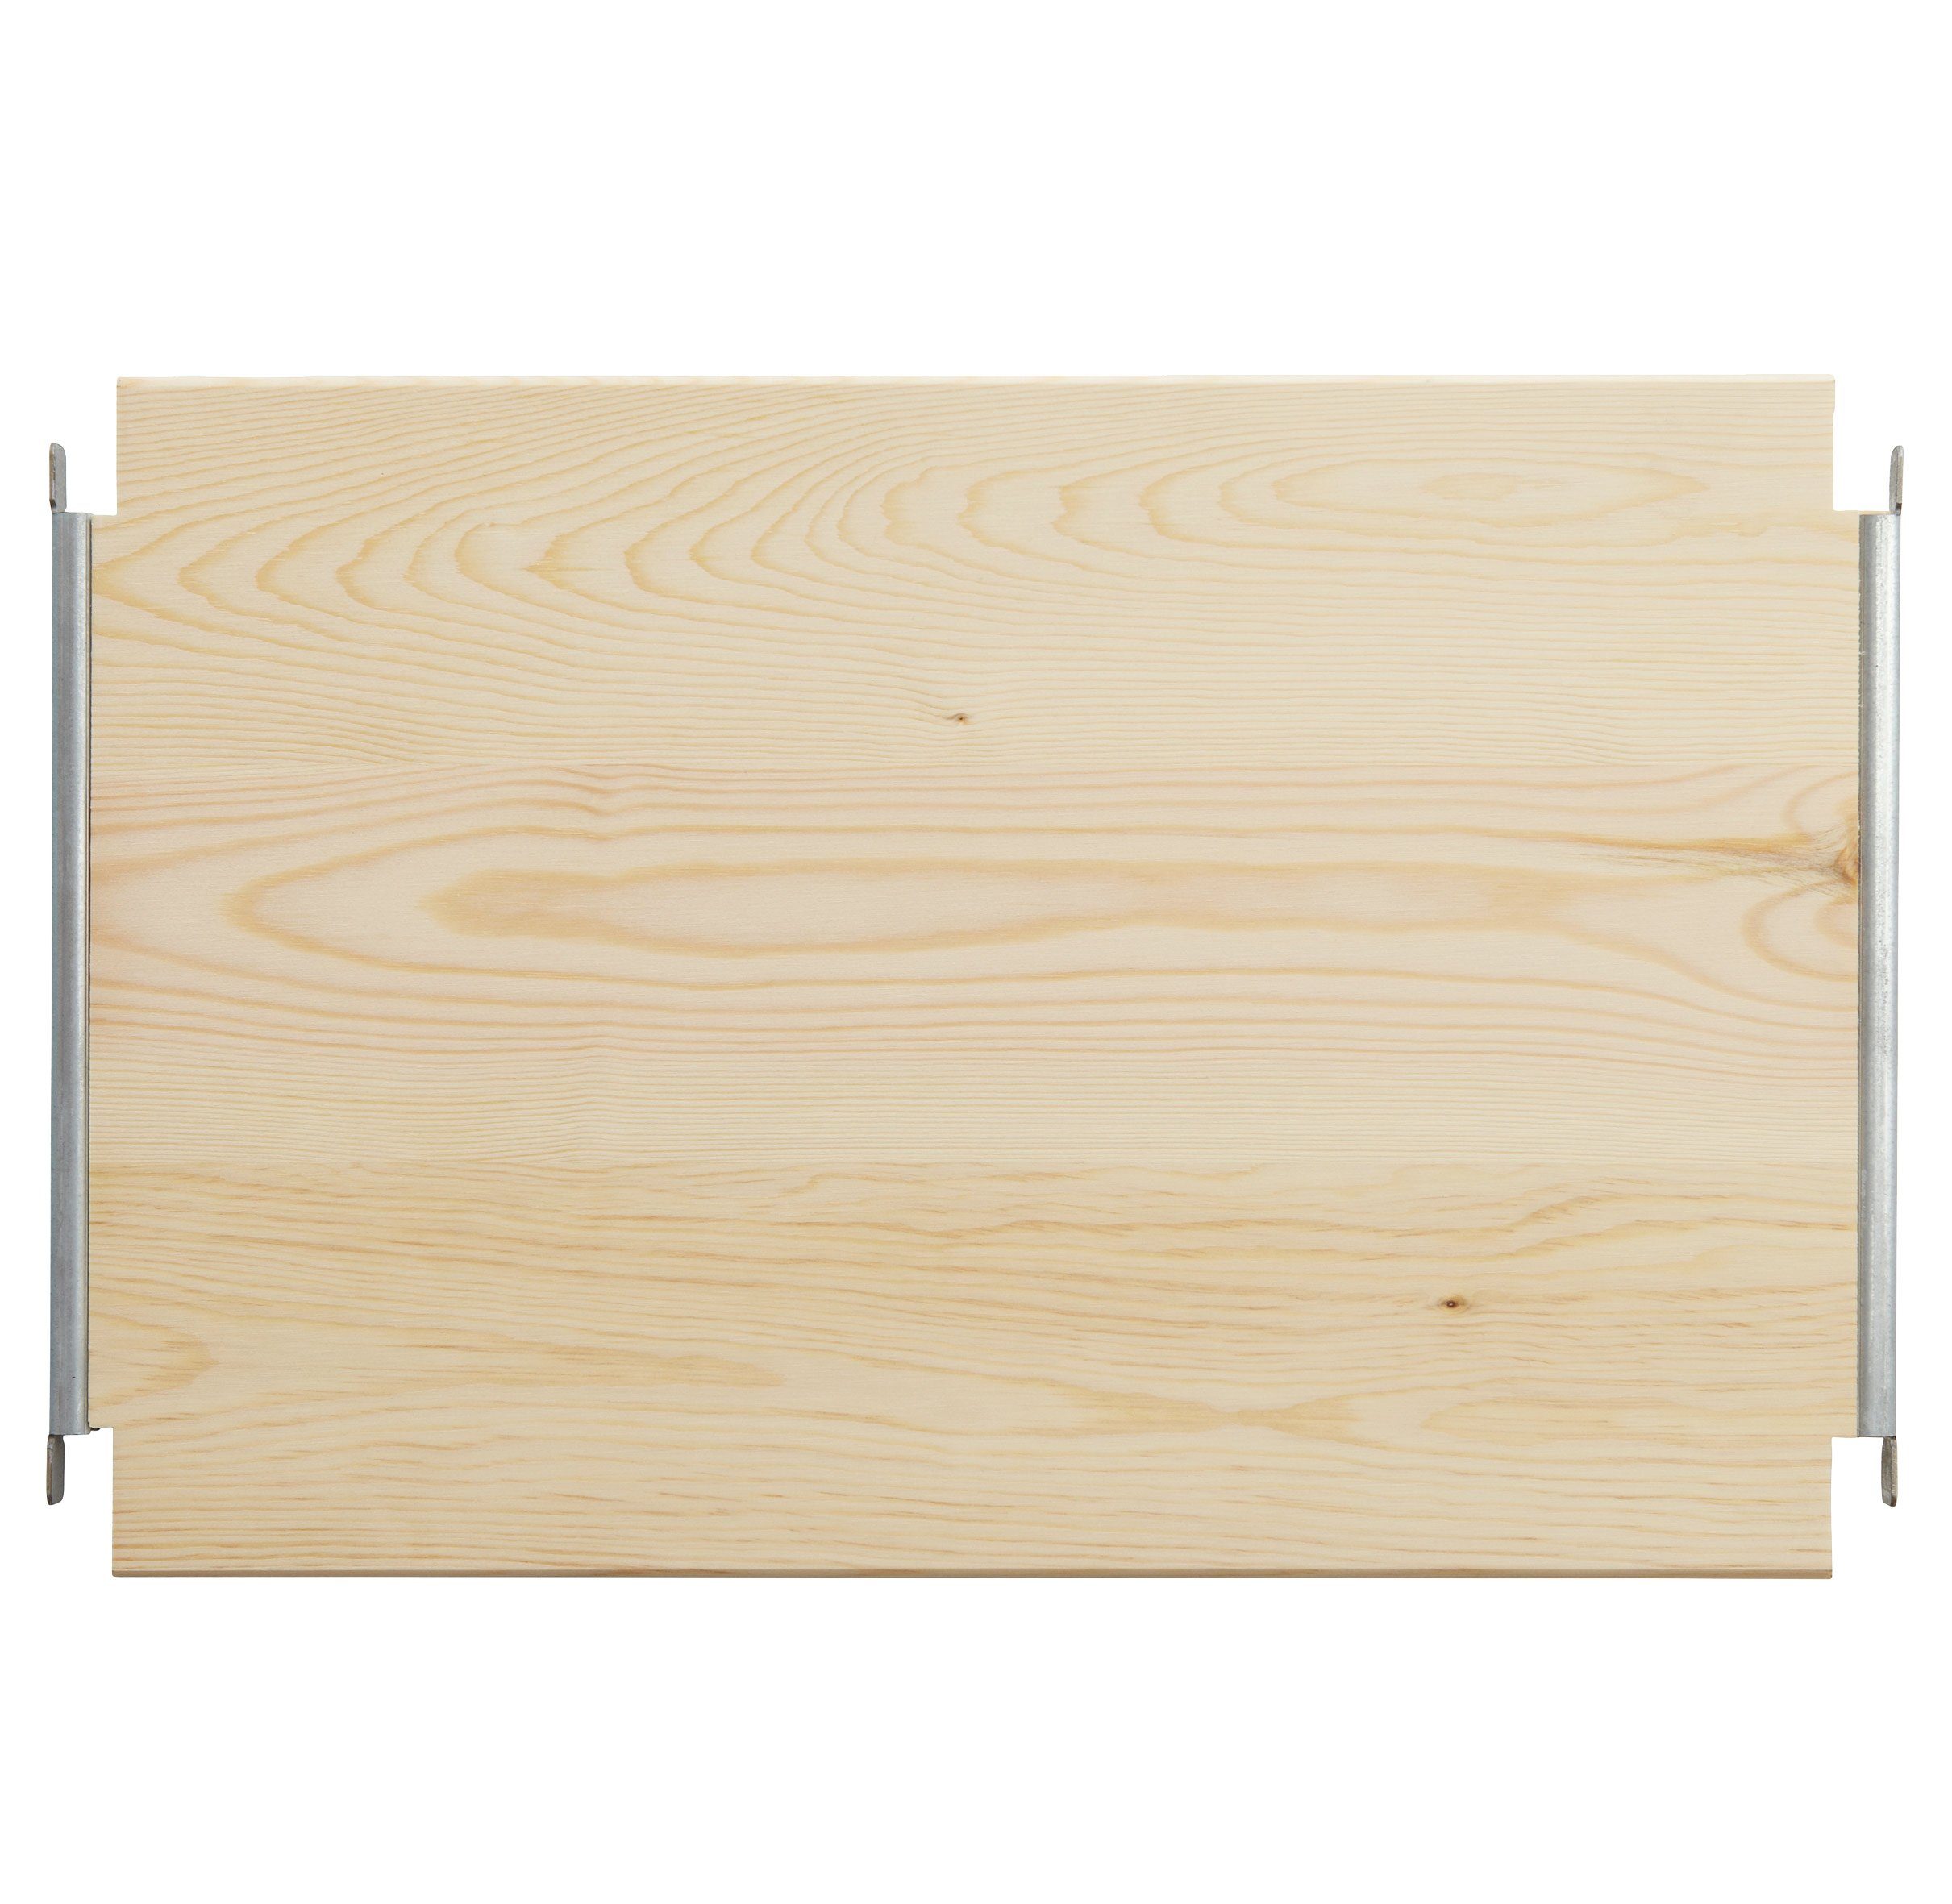 Einlegeboden Regalboden LASSE, B 39 x 40 cm, Kieferholz T Regalsysteme massiv, für